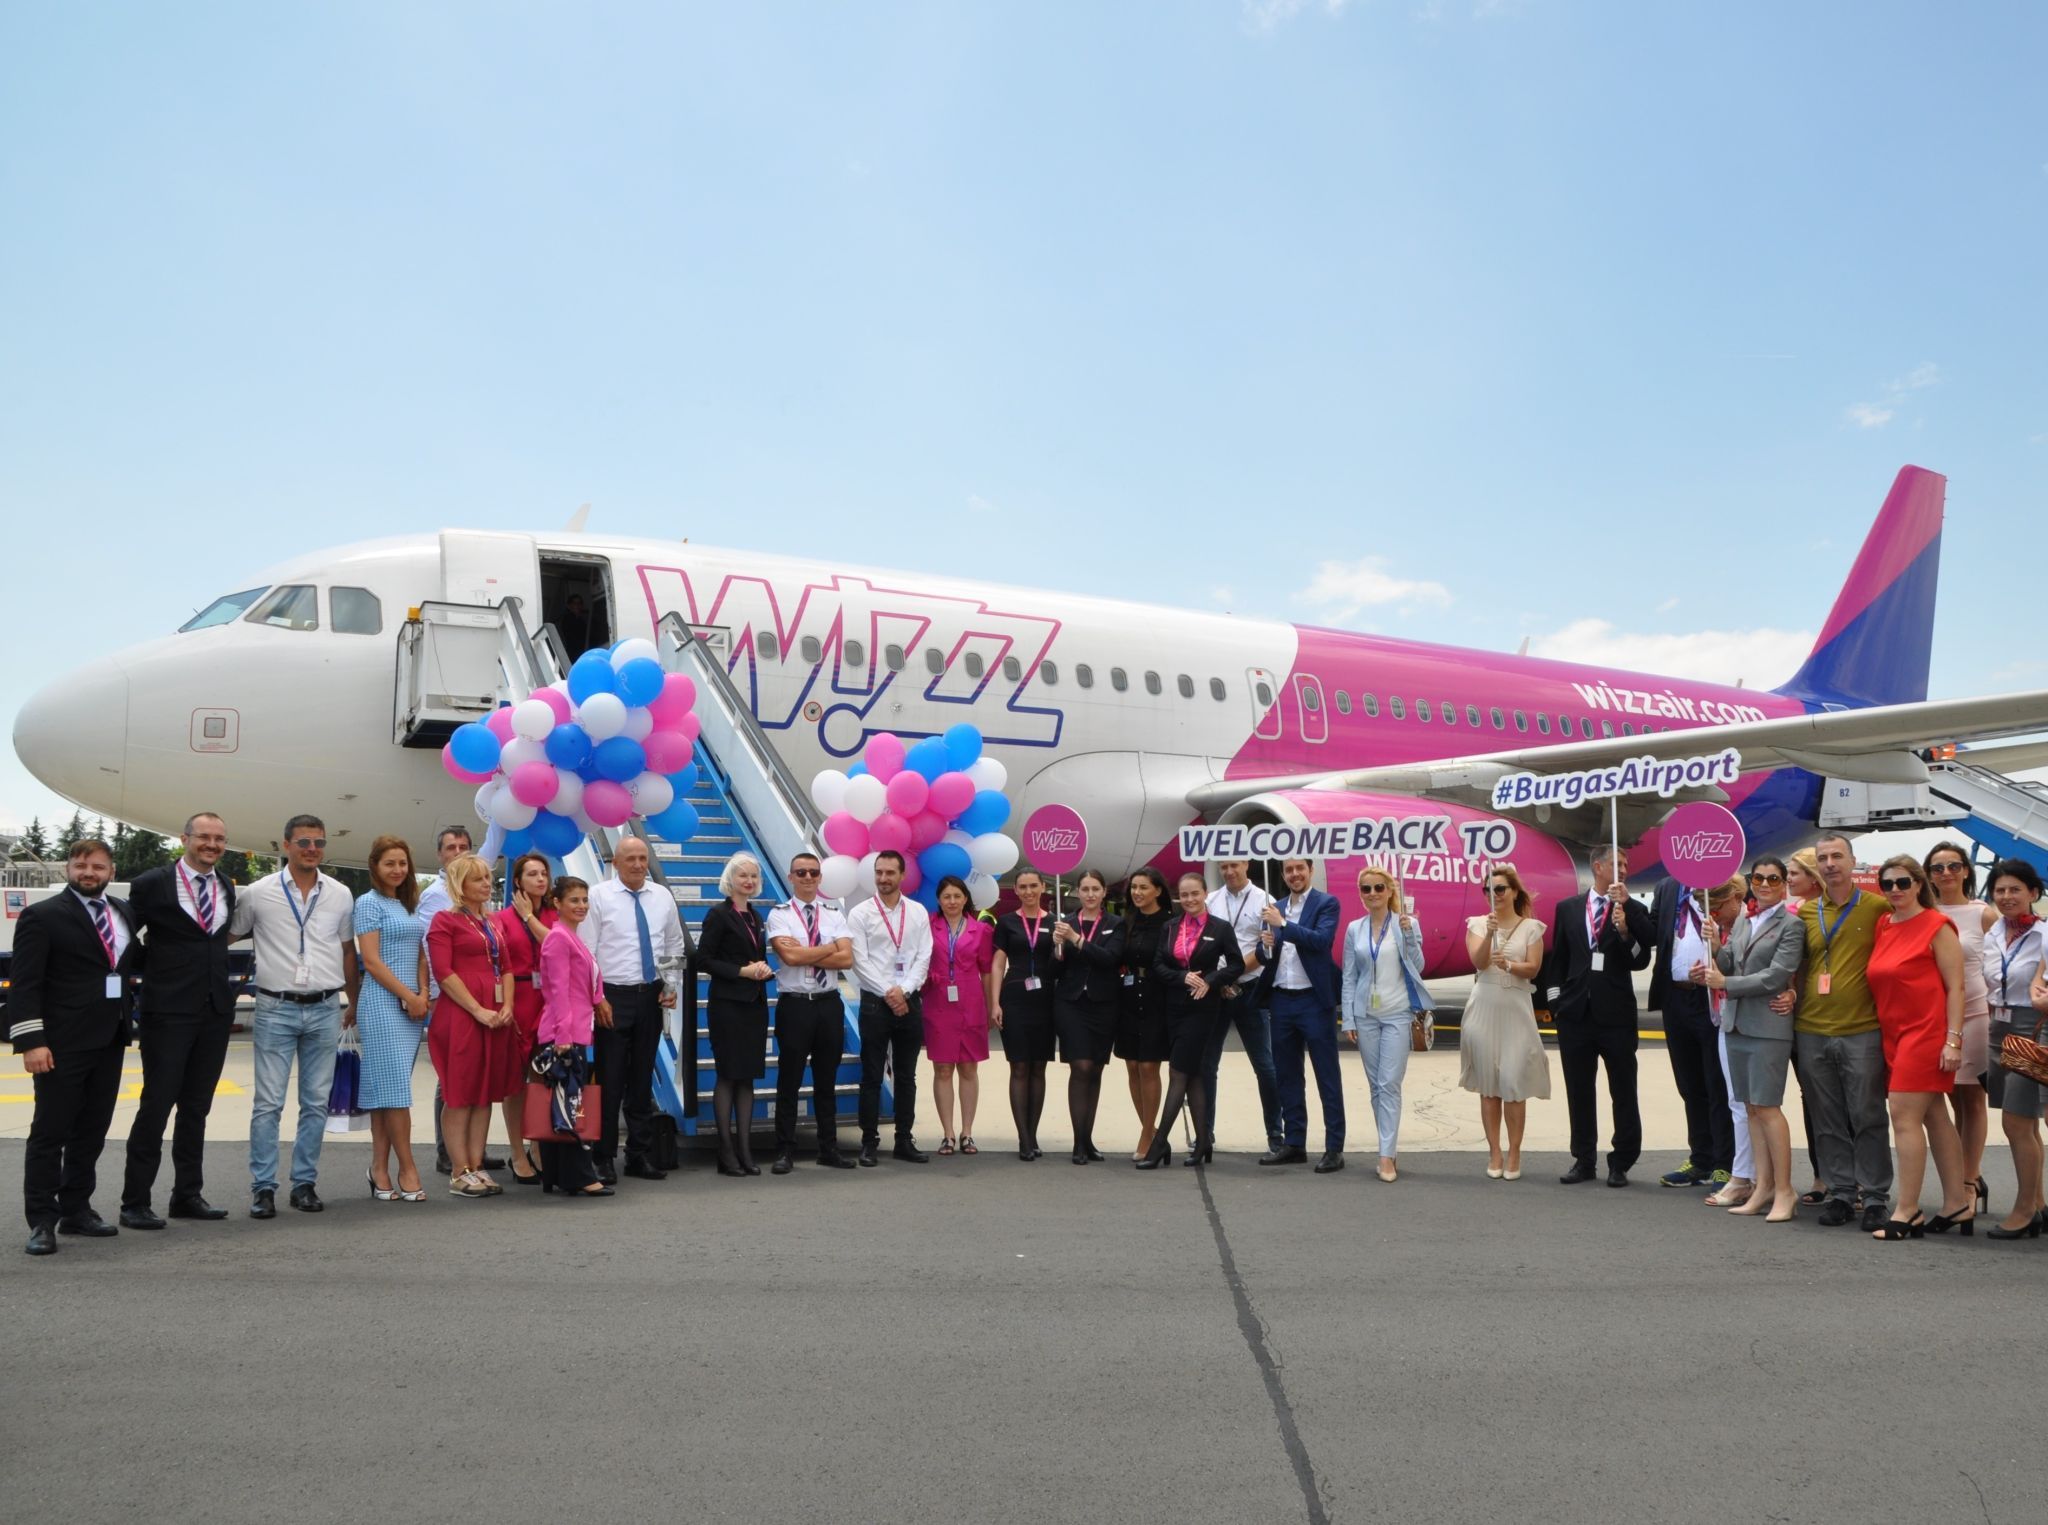 Wizz Air Burgas base reopening